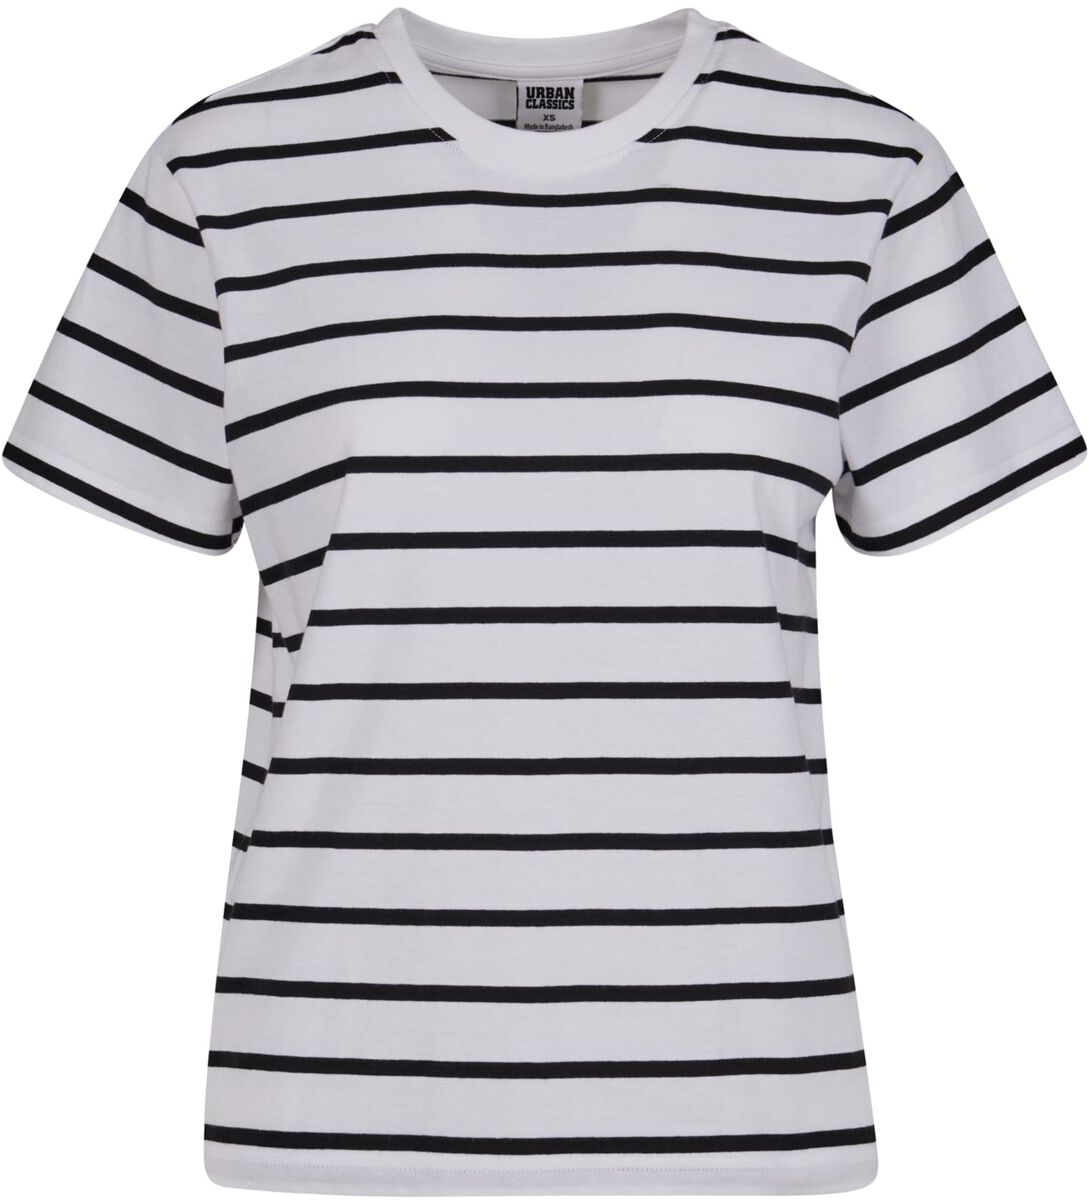 Urban Classics T-Shirt - Ladies Striped Boxy Tee - XS bis 3XL - für Damen - Größe XS - schwarz/weiß